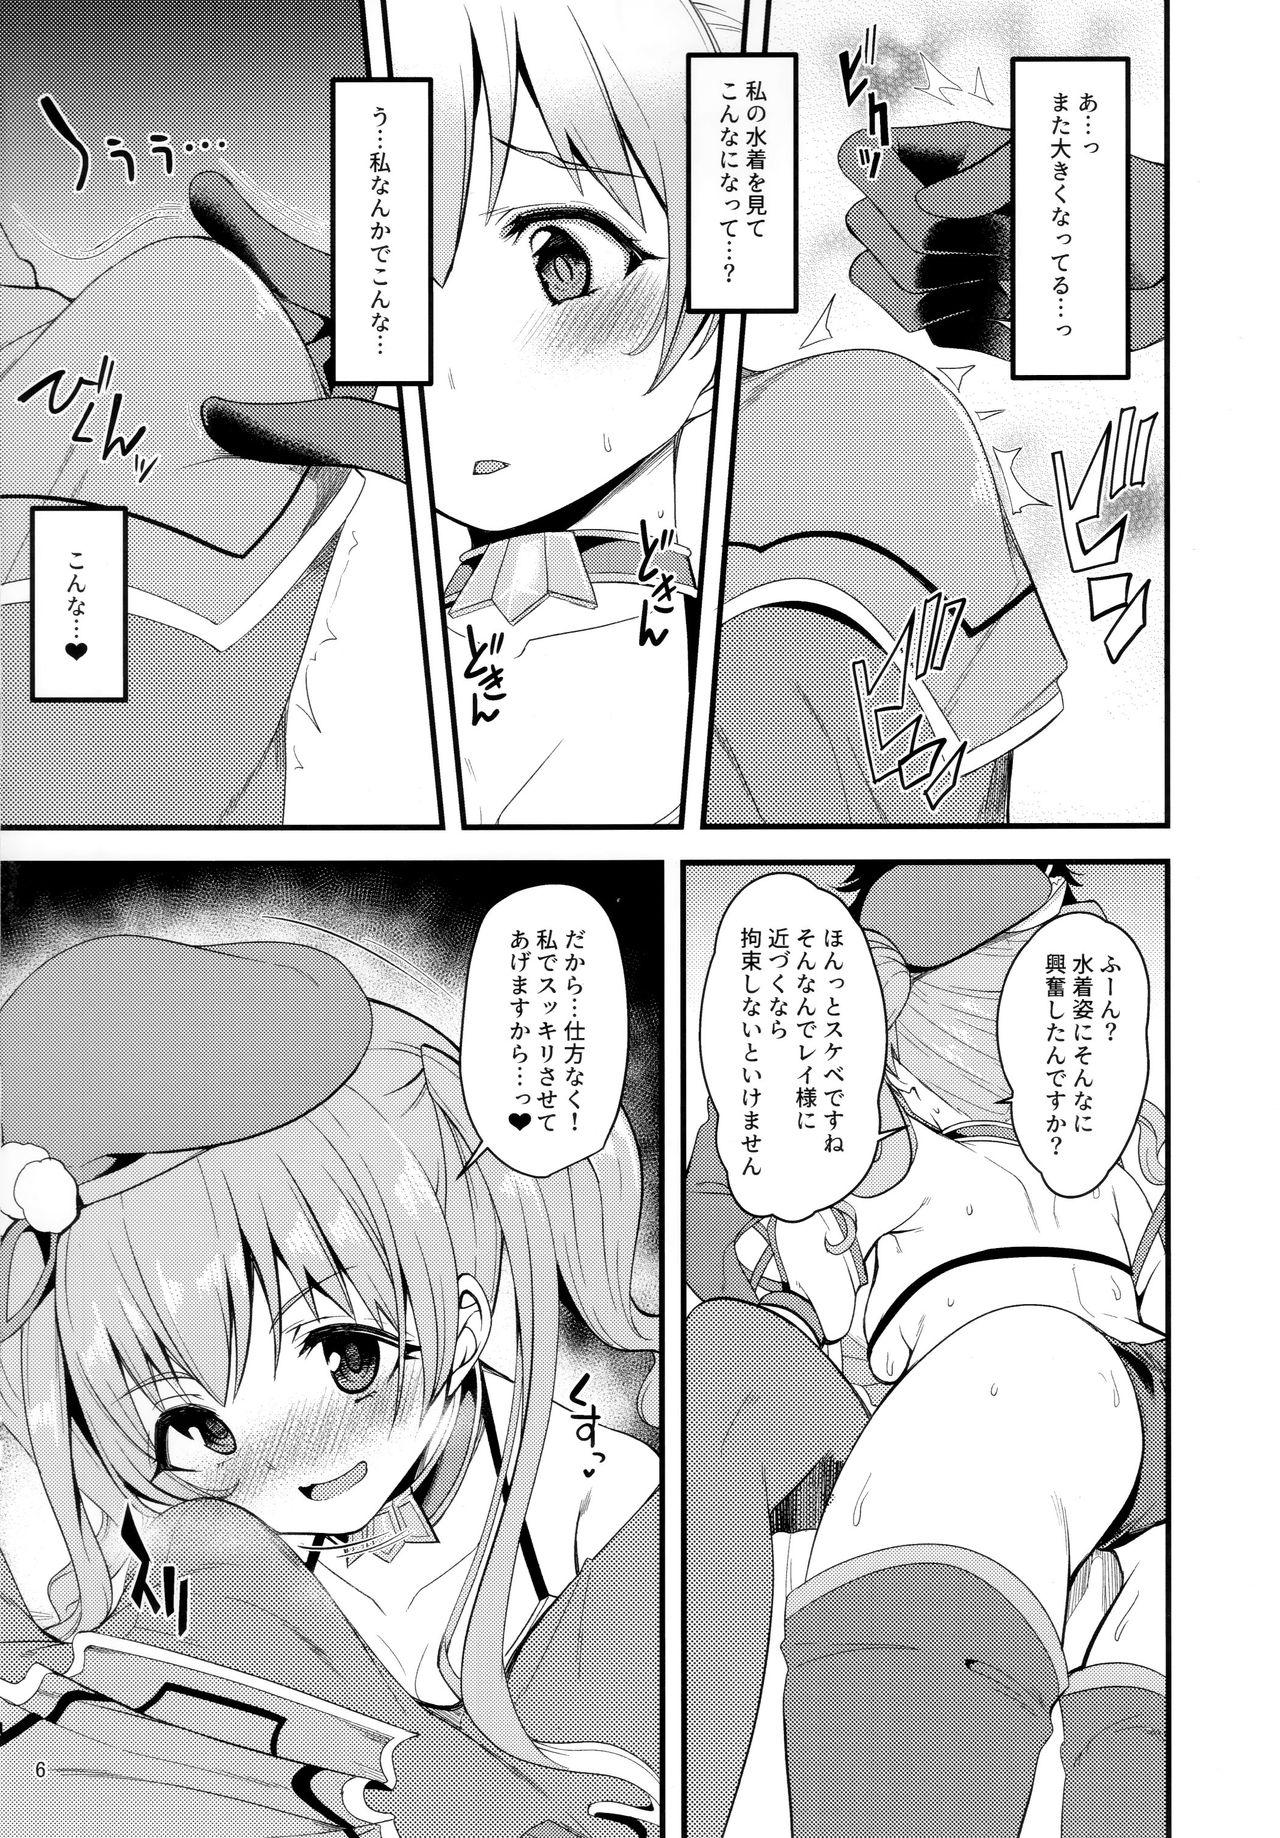 Behind Tsumugi Make Heroine Move!! 02 - Princess connect Travesti - Page 5